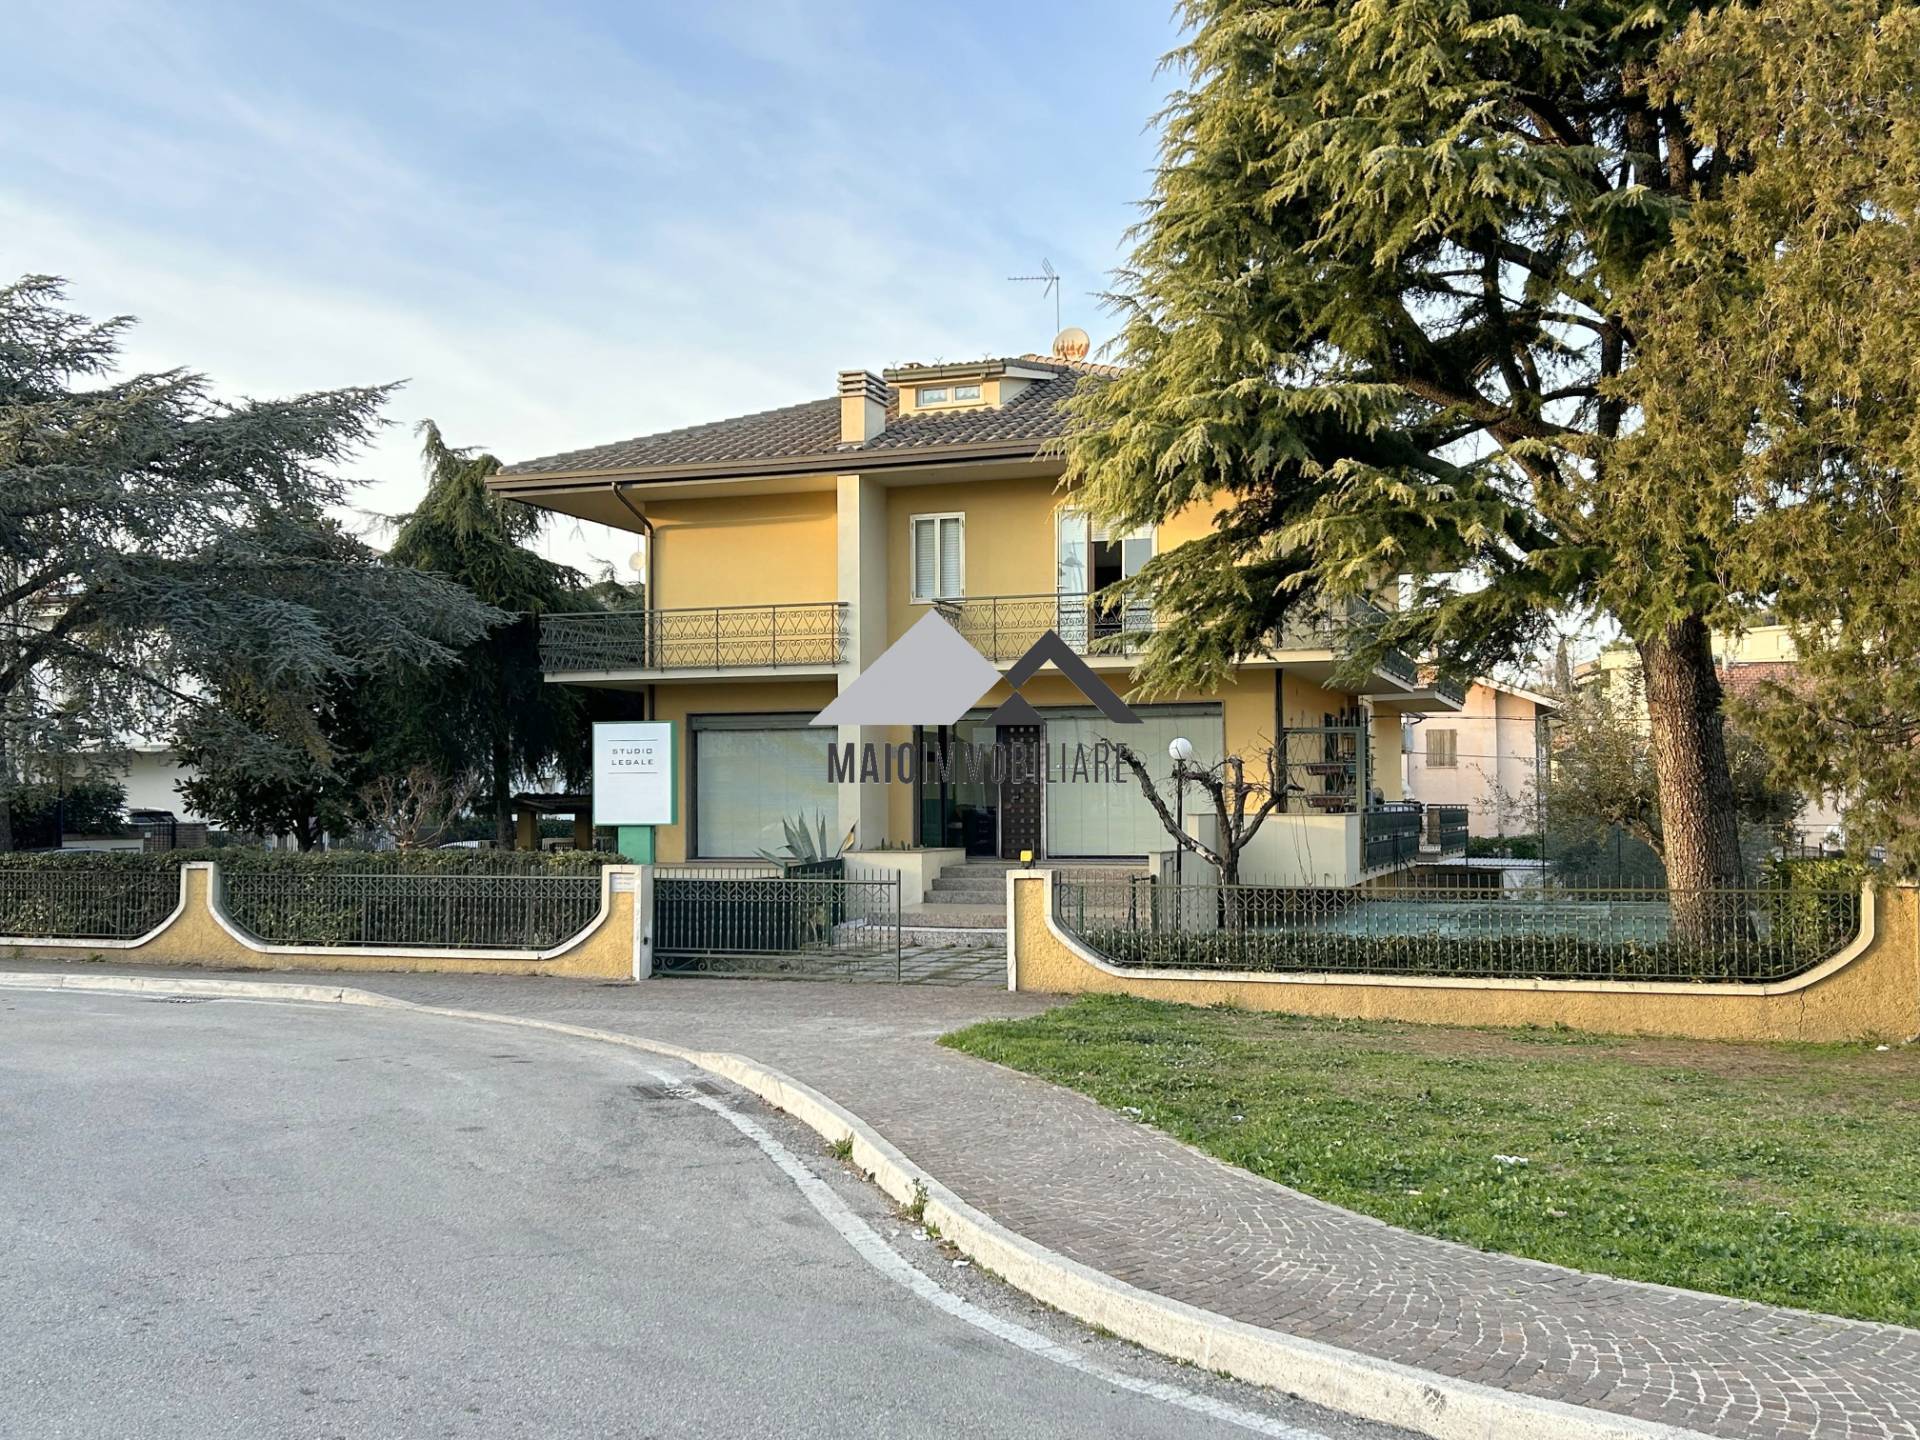 Casa indipendente in vendita Pesaro e urbino